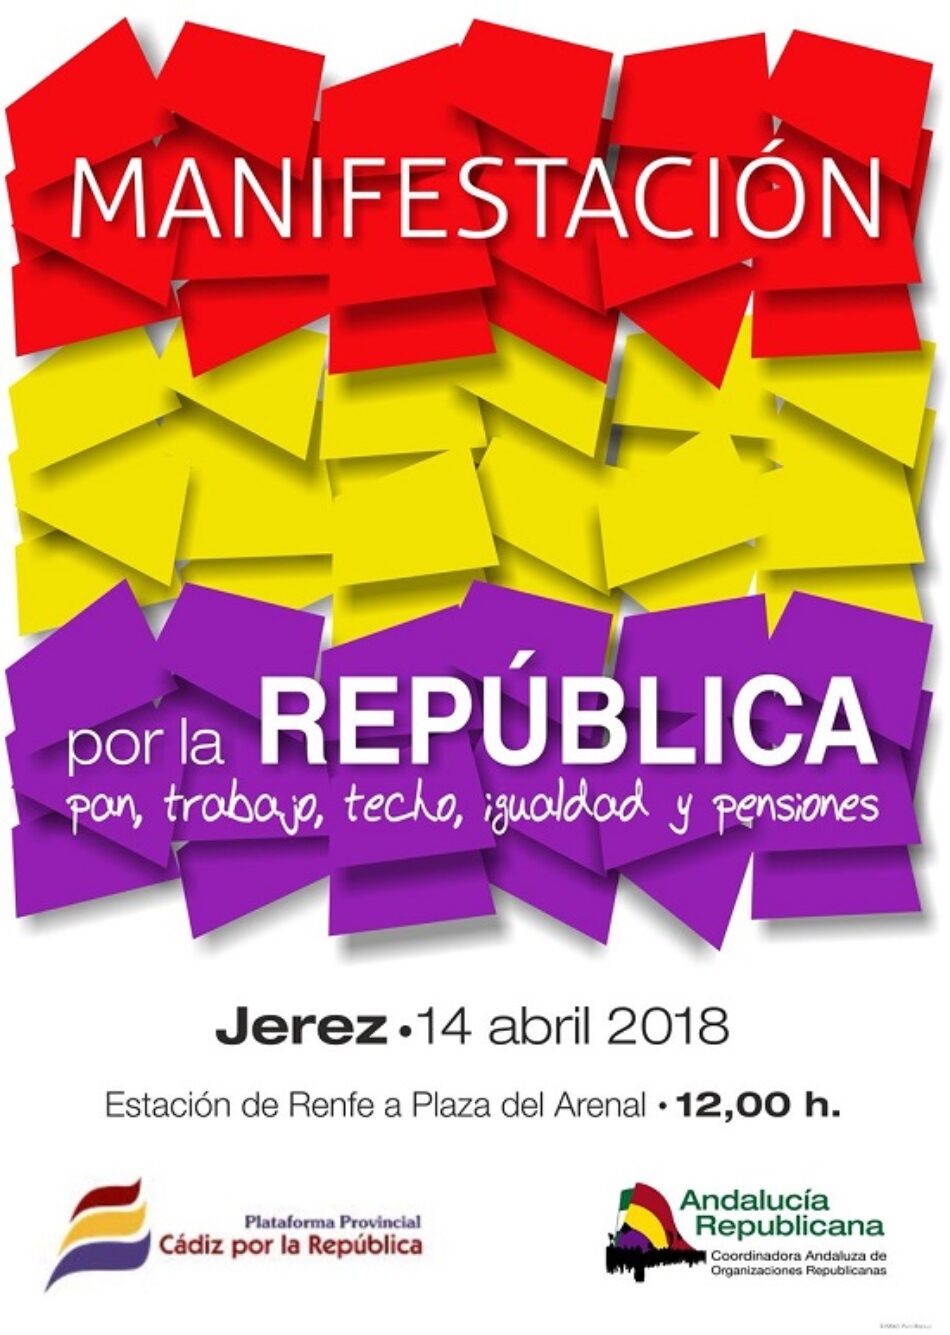 Manifestación por la República en Jerez, el 14 de abril